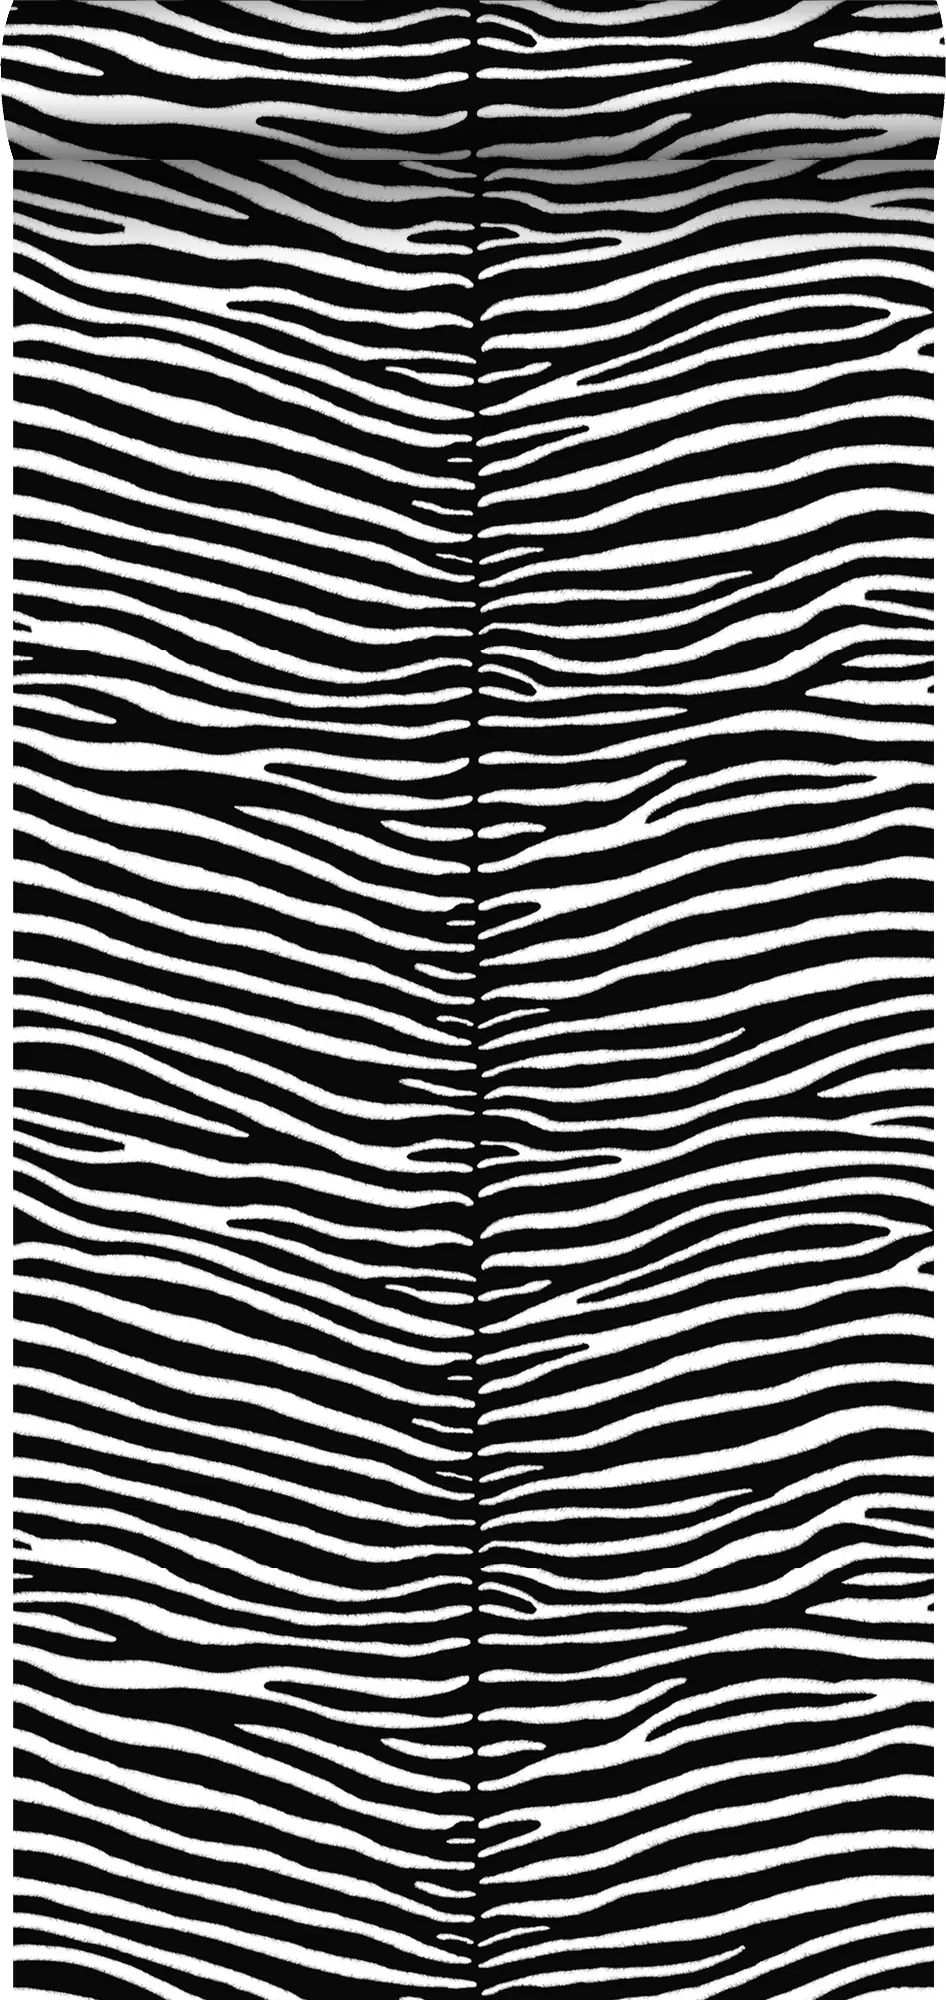 Tapete Zebras